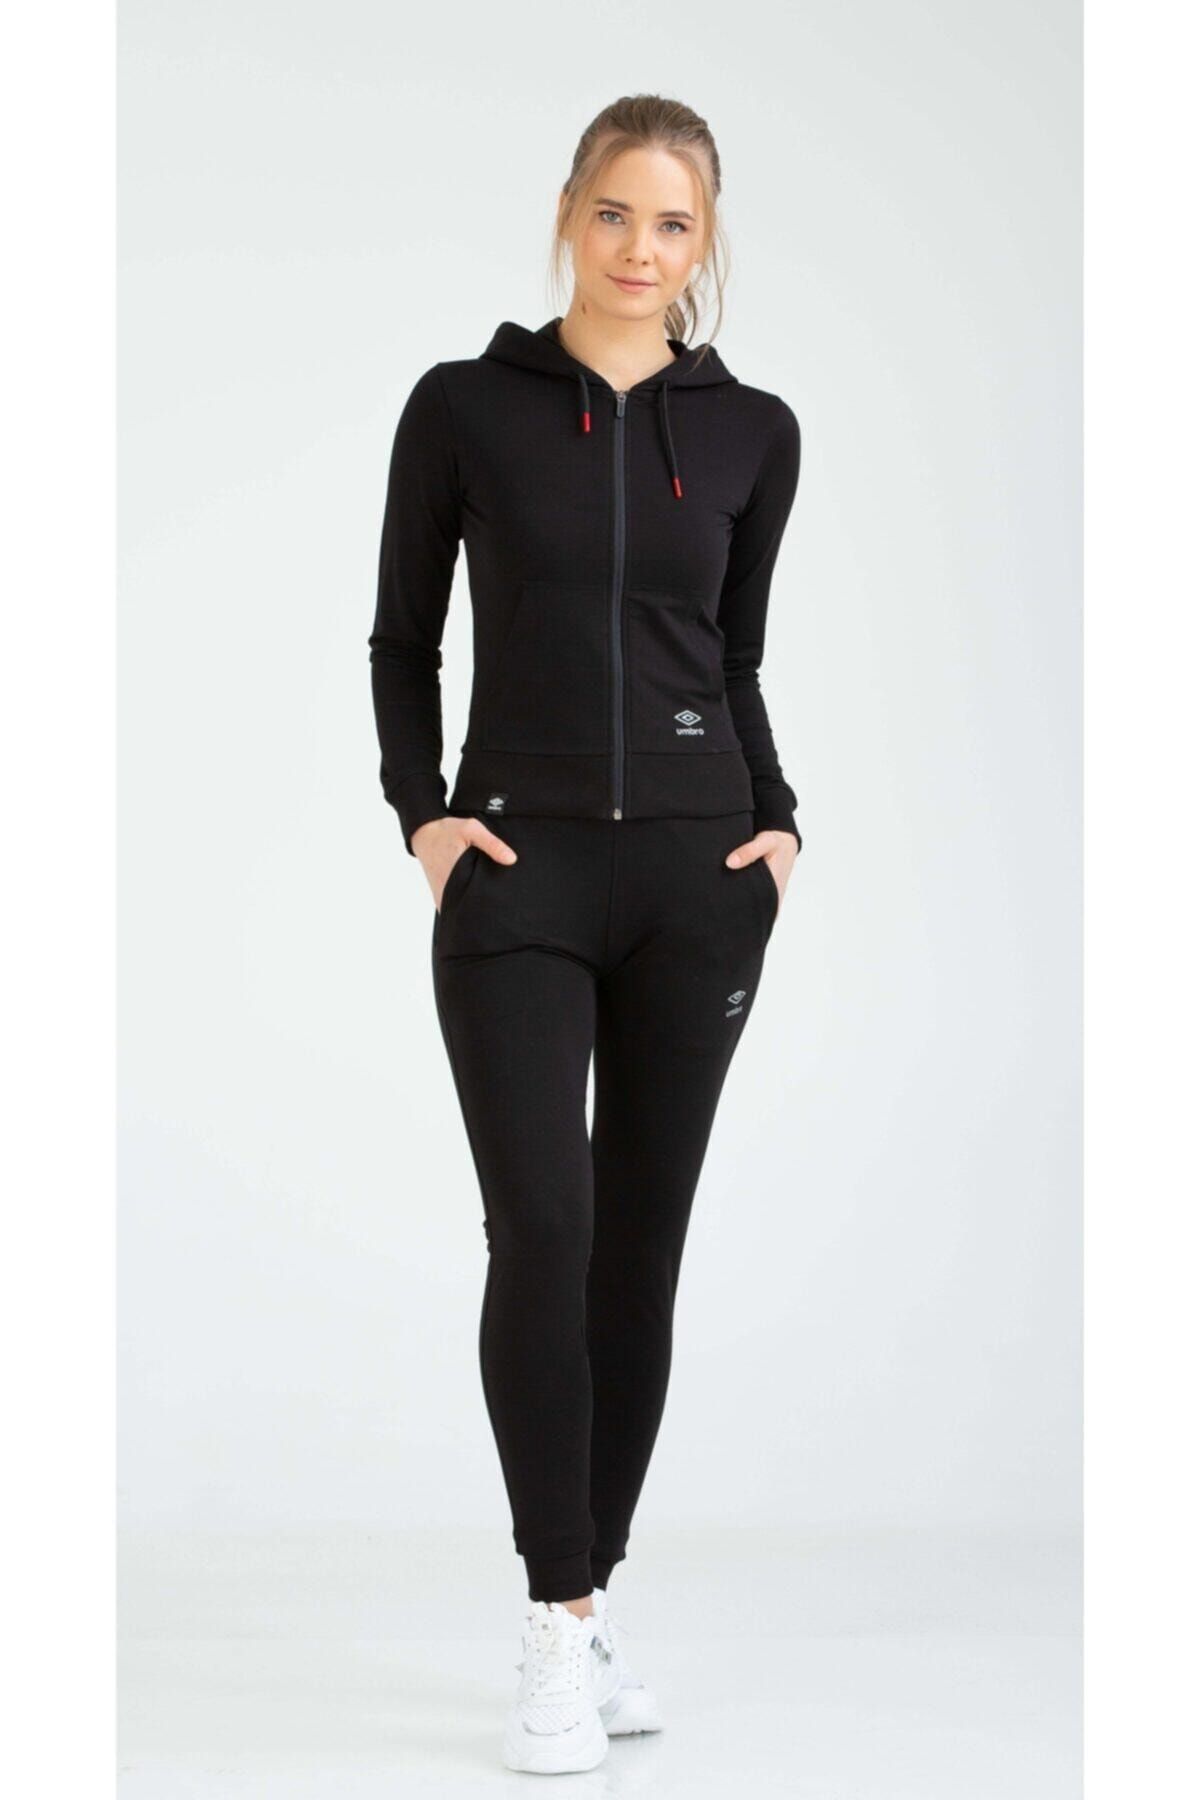 Umbro Kadın Eşofman Takımı Slimfit Va-0013 Rox Track Suit